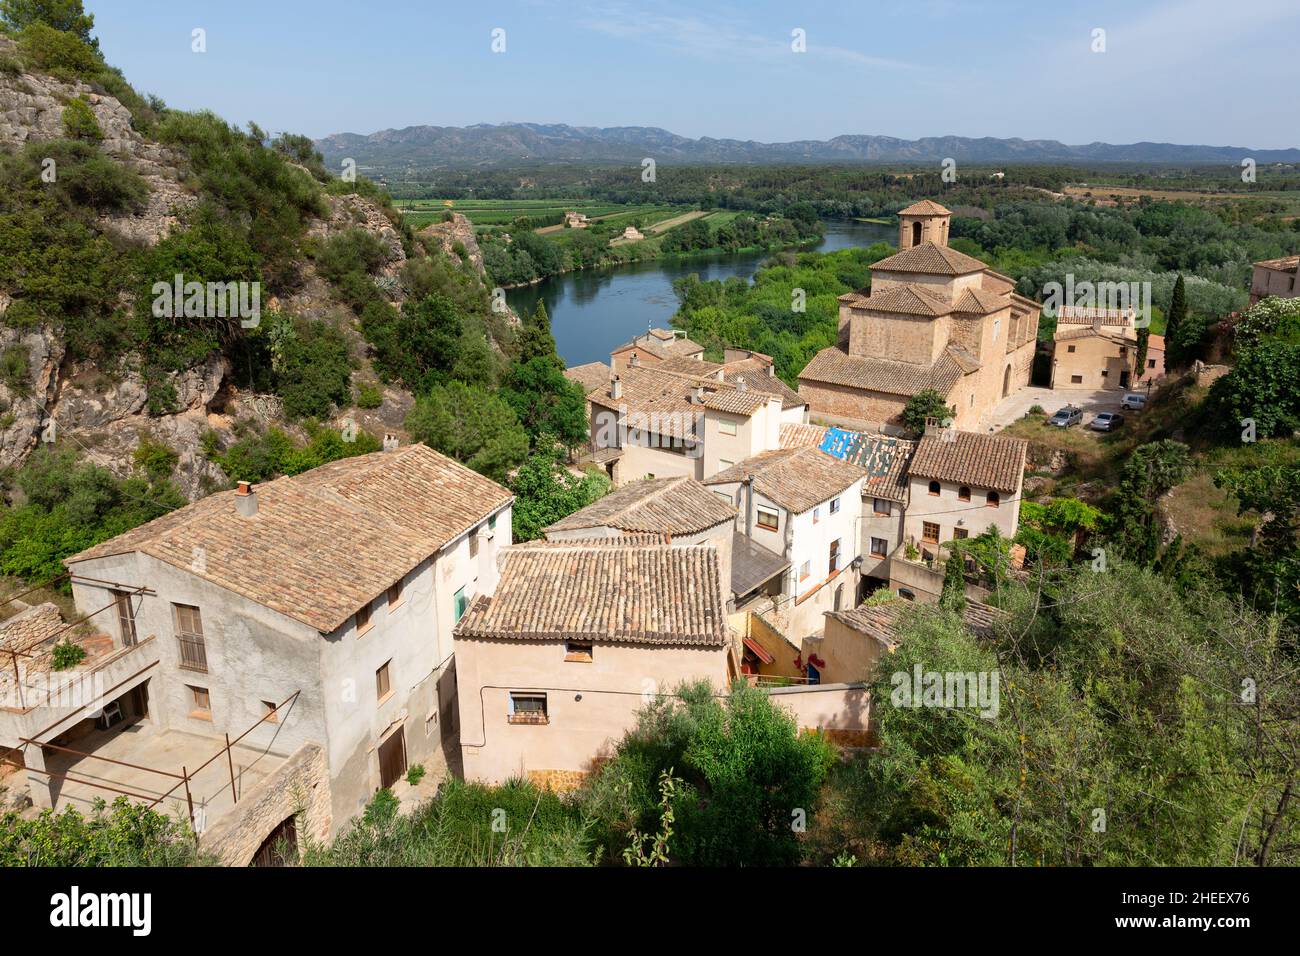 Vue sur les toits du village de Miravet dans la province de Tarragone.Catalogne, Espagne.Écotourisme. Banque D'Images